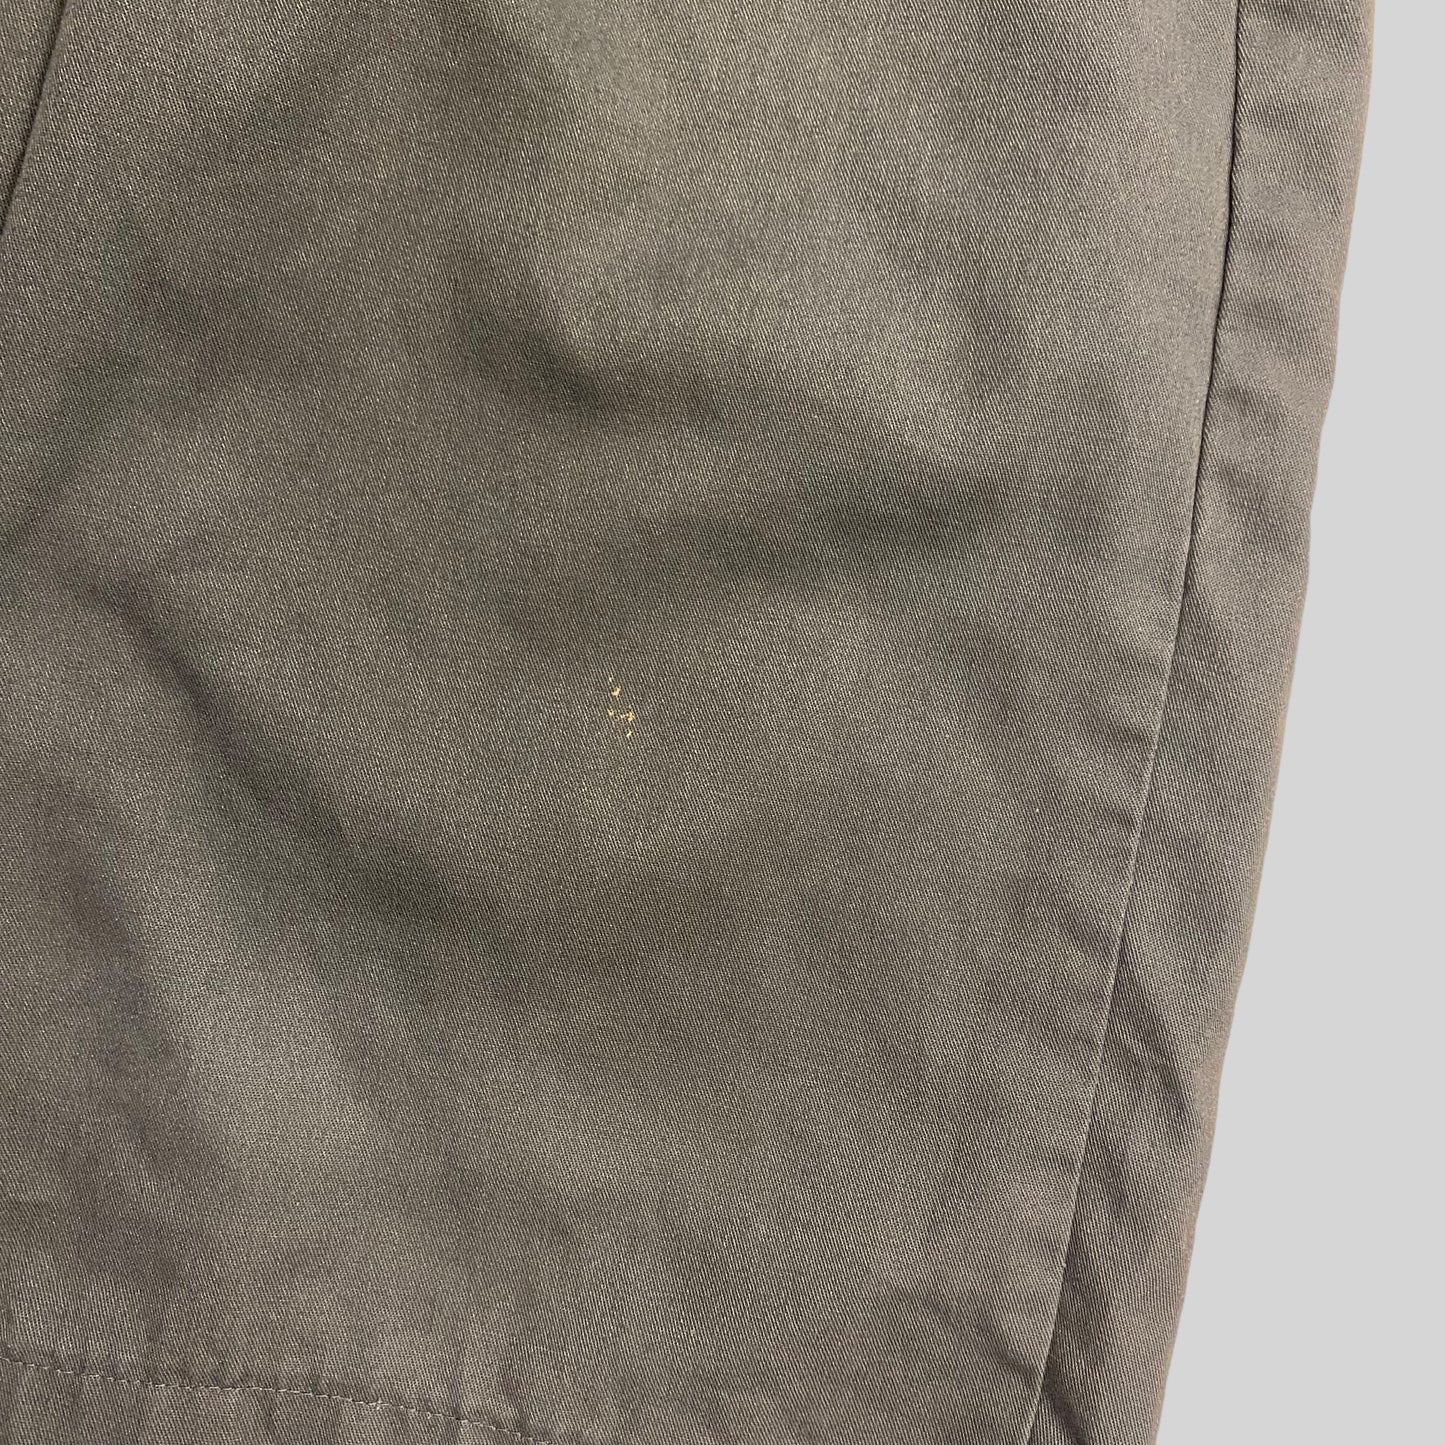 Dickies half chino pants gray